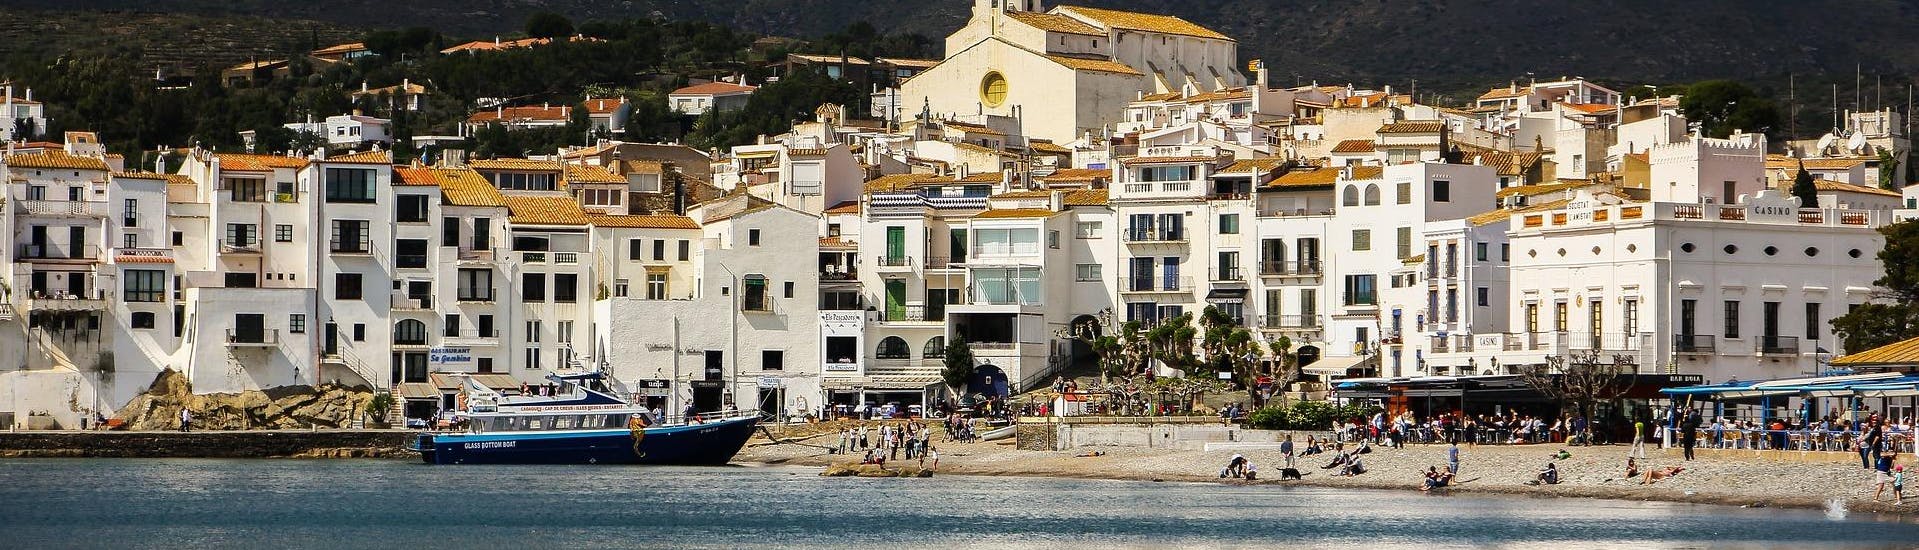 Uitzicht op de kust tijdens een boottocht naar Cadaqués.